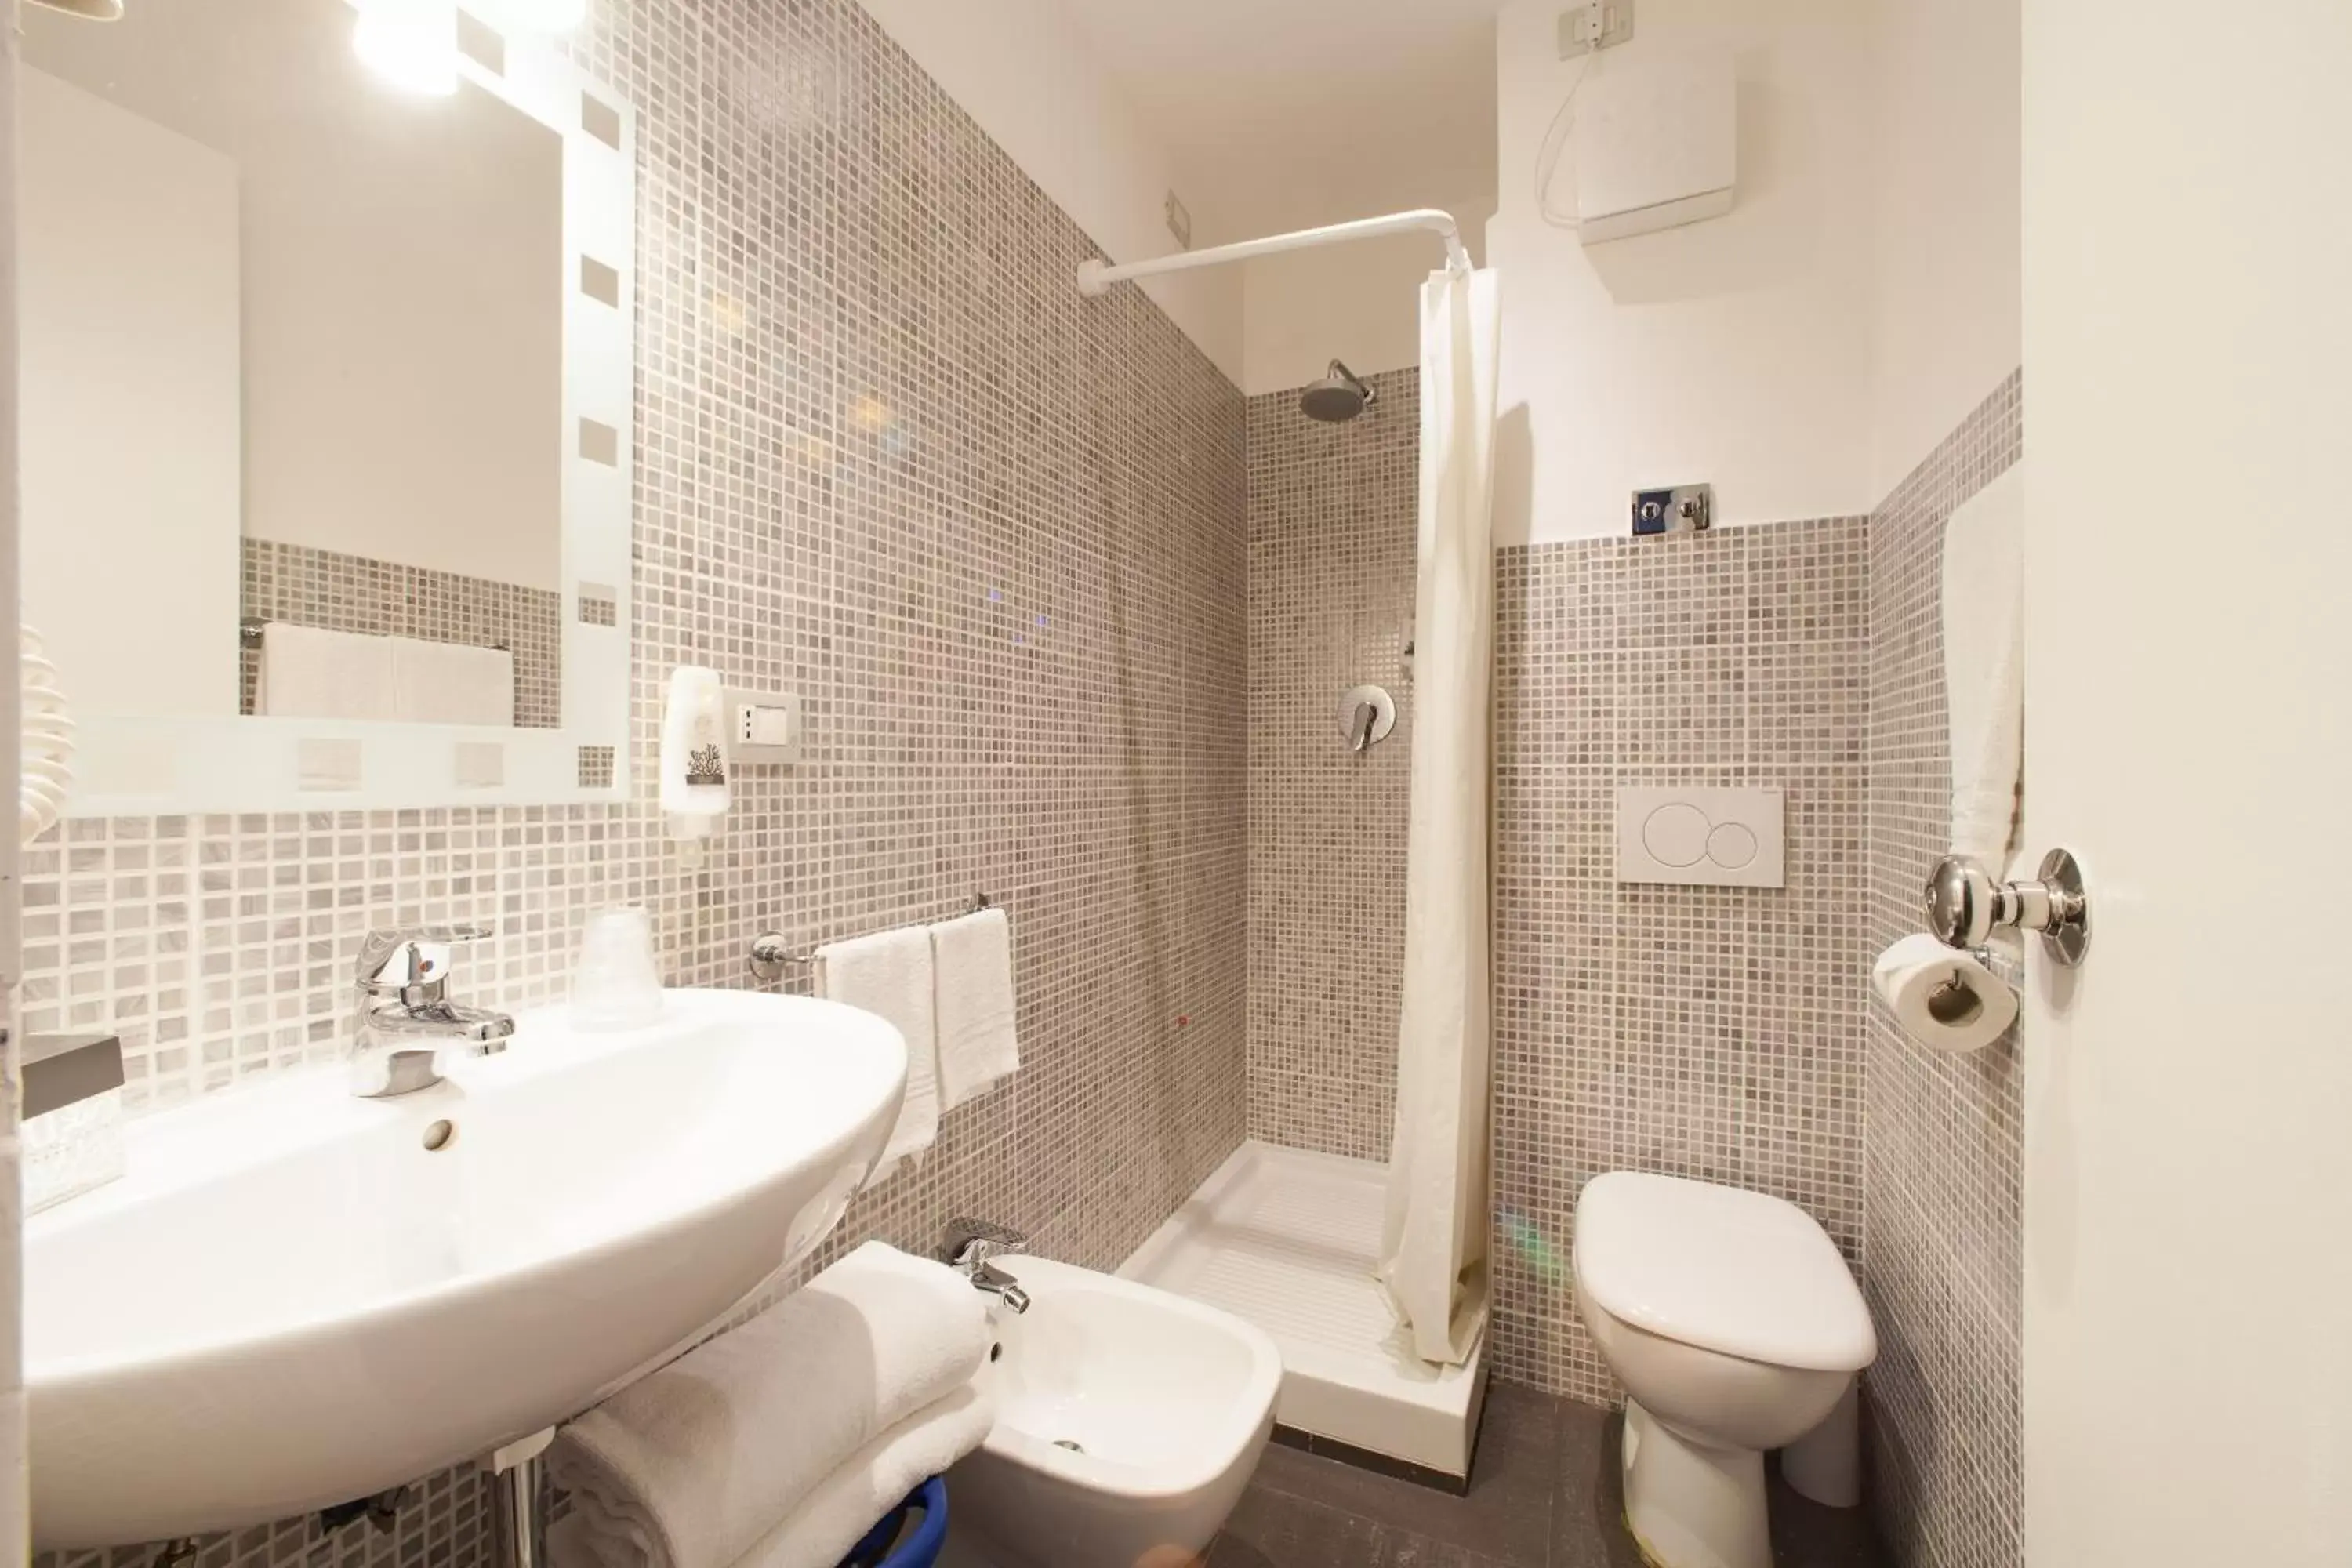 Bathroom in B&B Hotels Park Hotel Suisse Santa Margherita Ligure